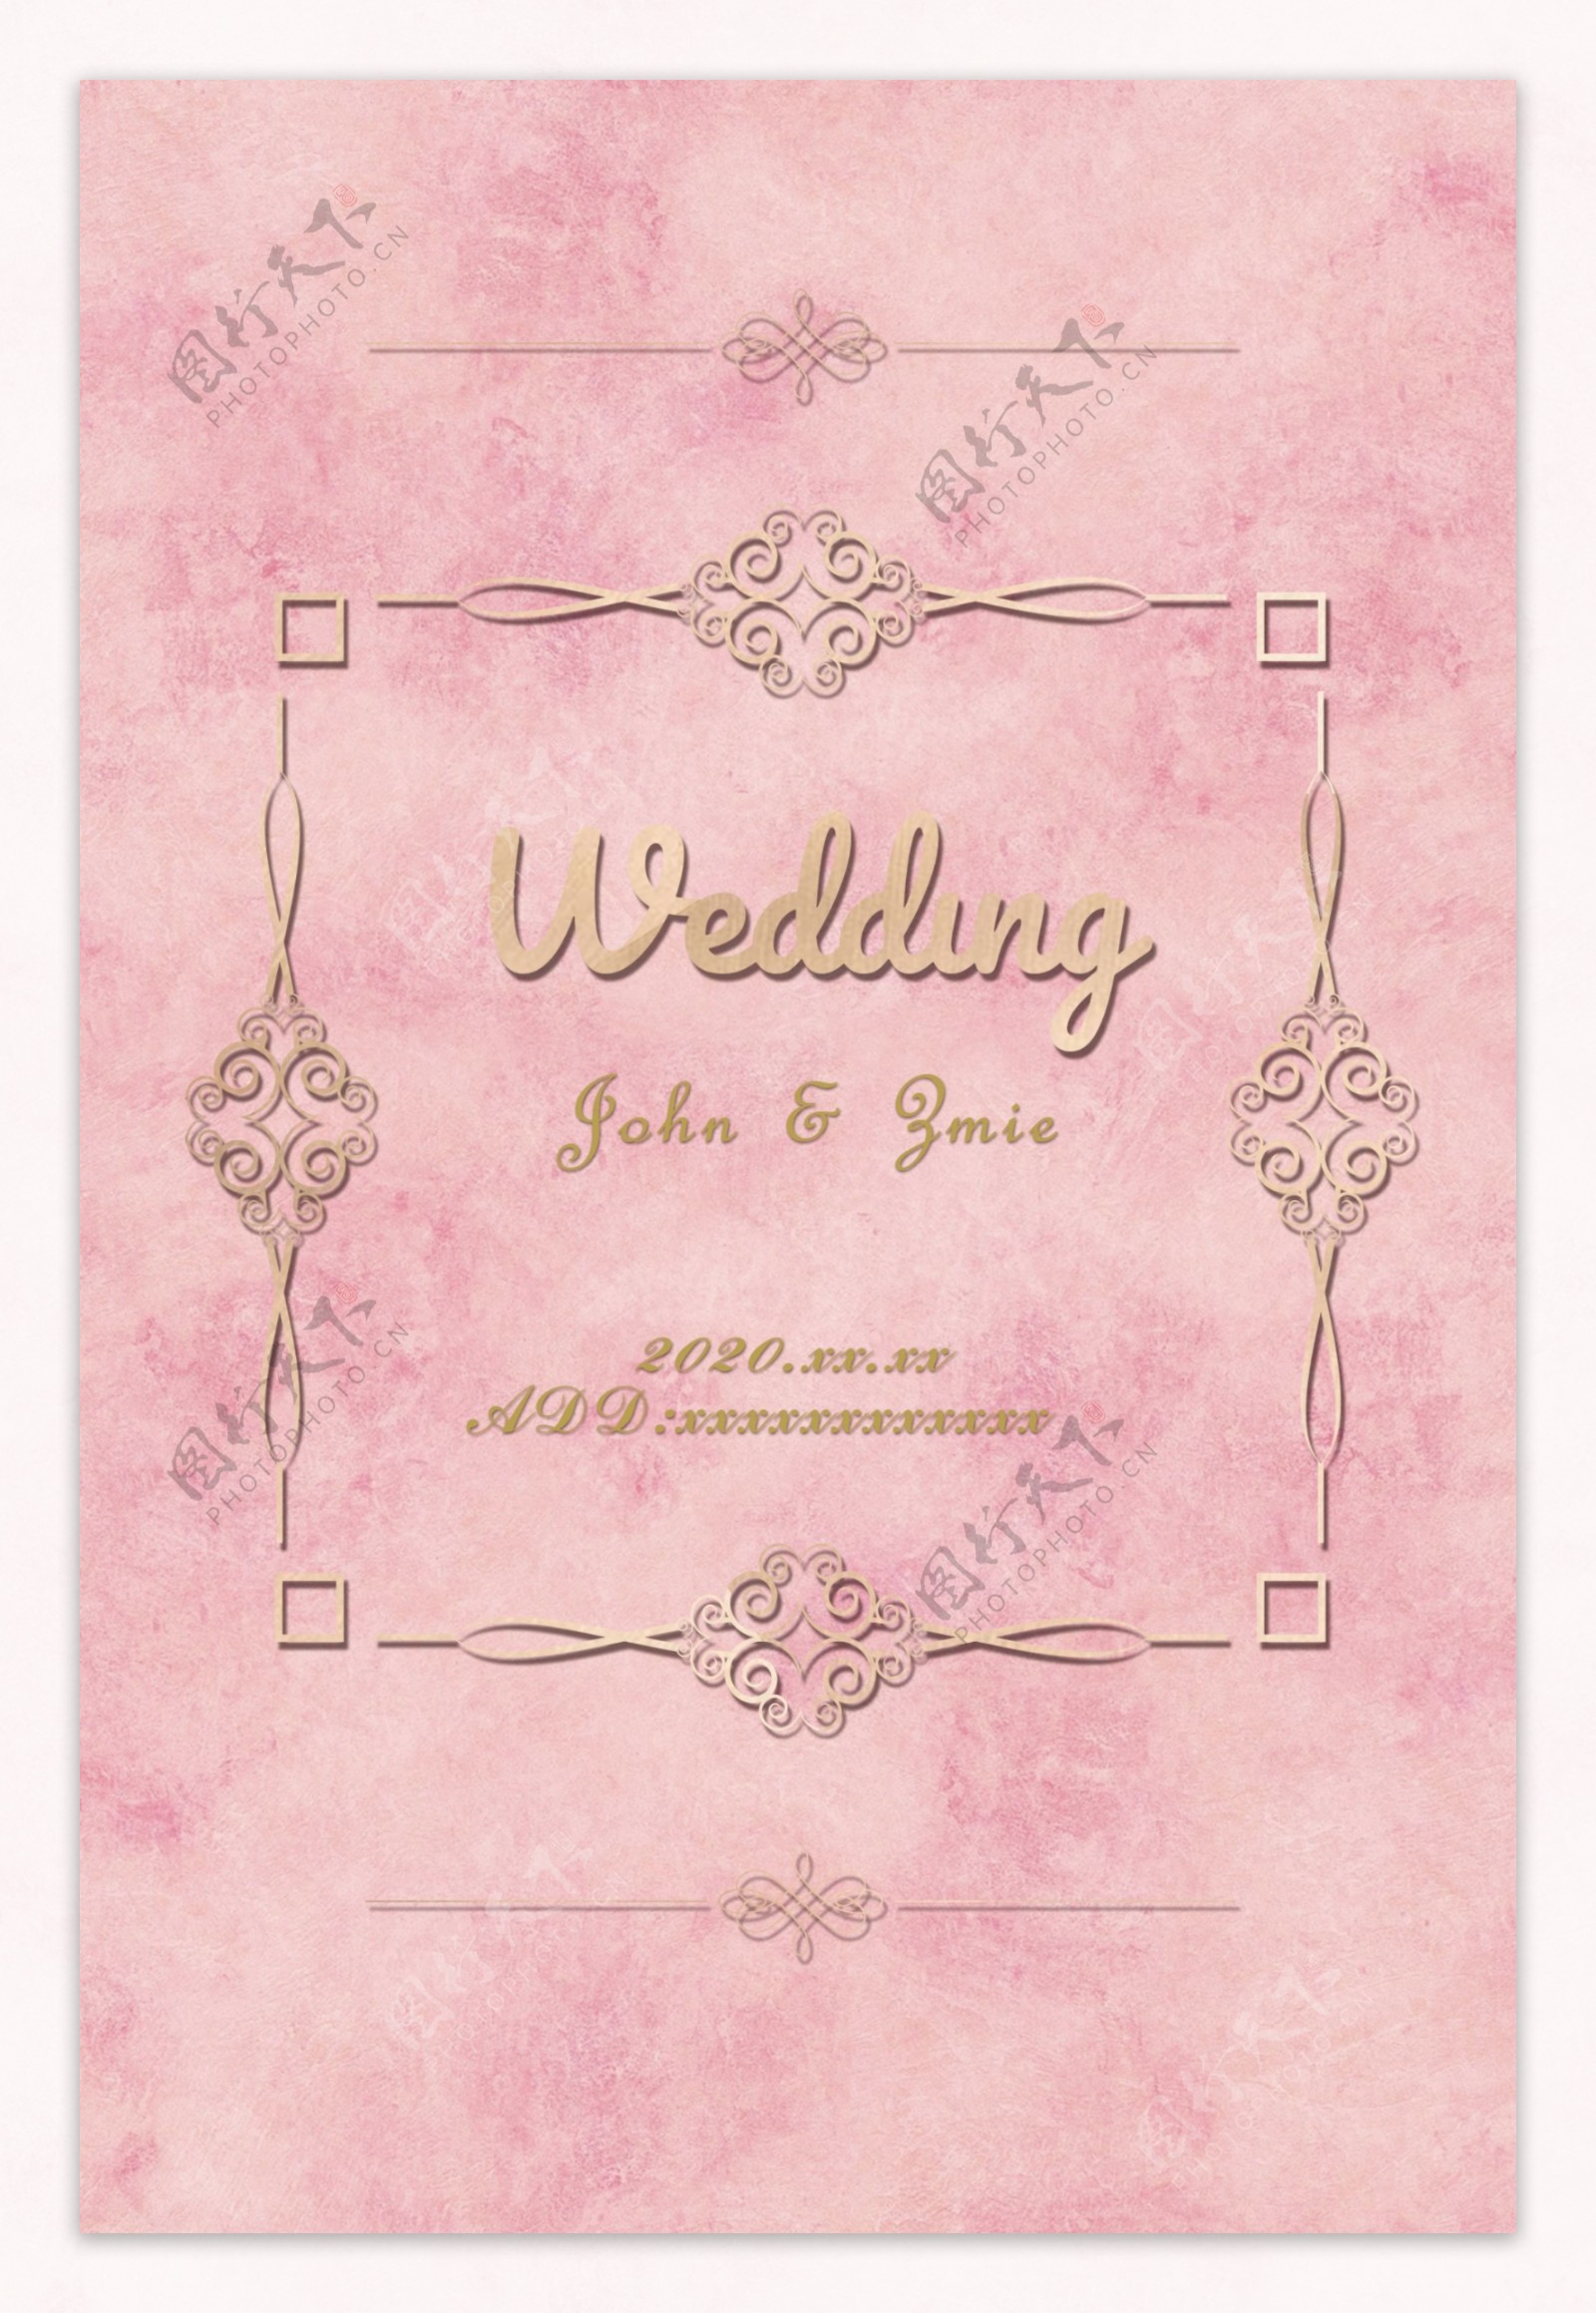 粉色婚礼海报